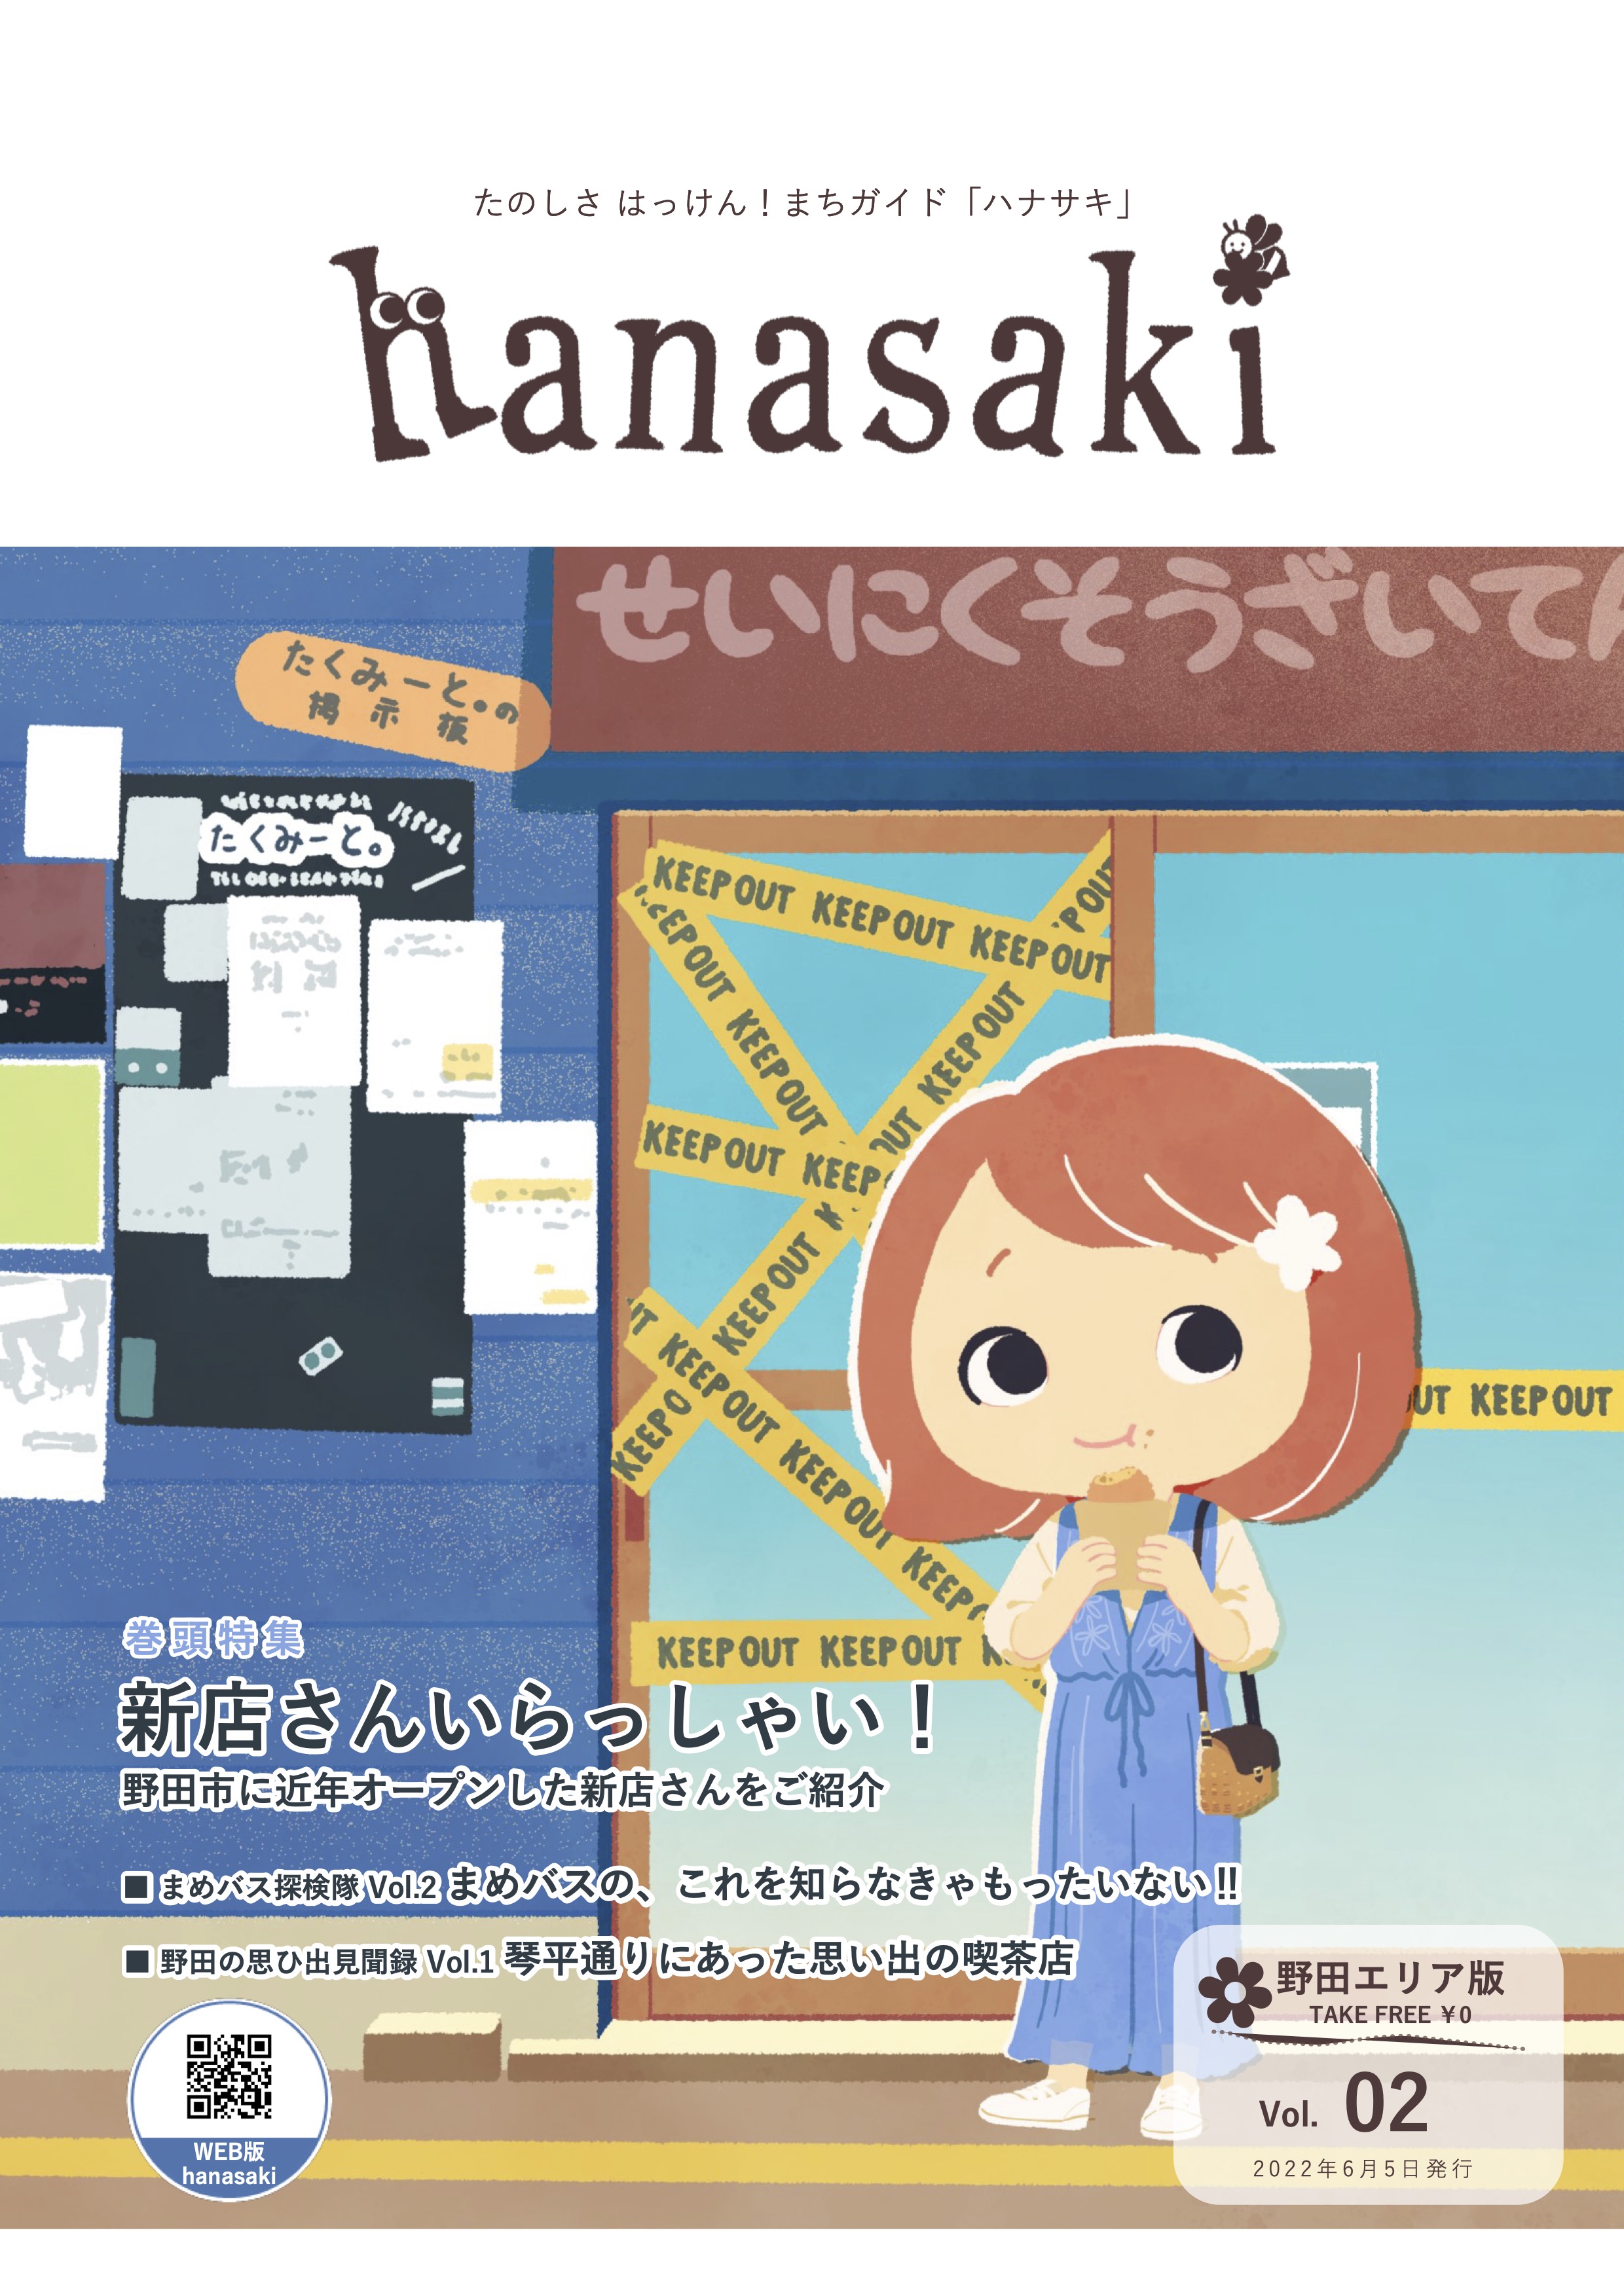 hanasaki_vol02